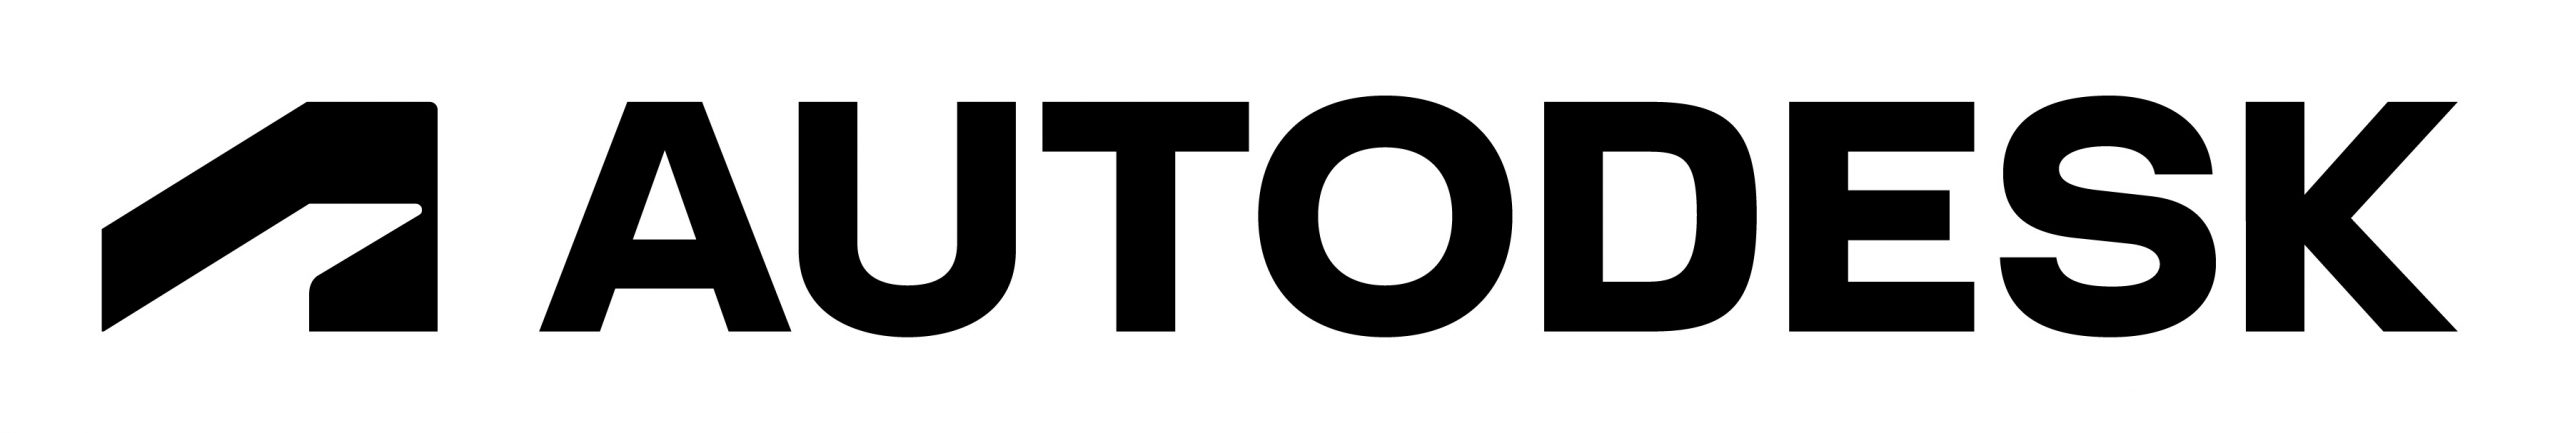 autodesk-logo-primary-rgb-black-large-scaled